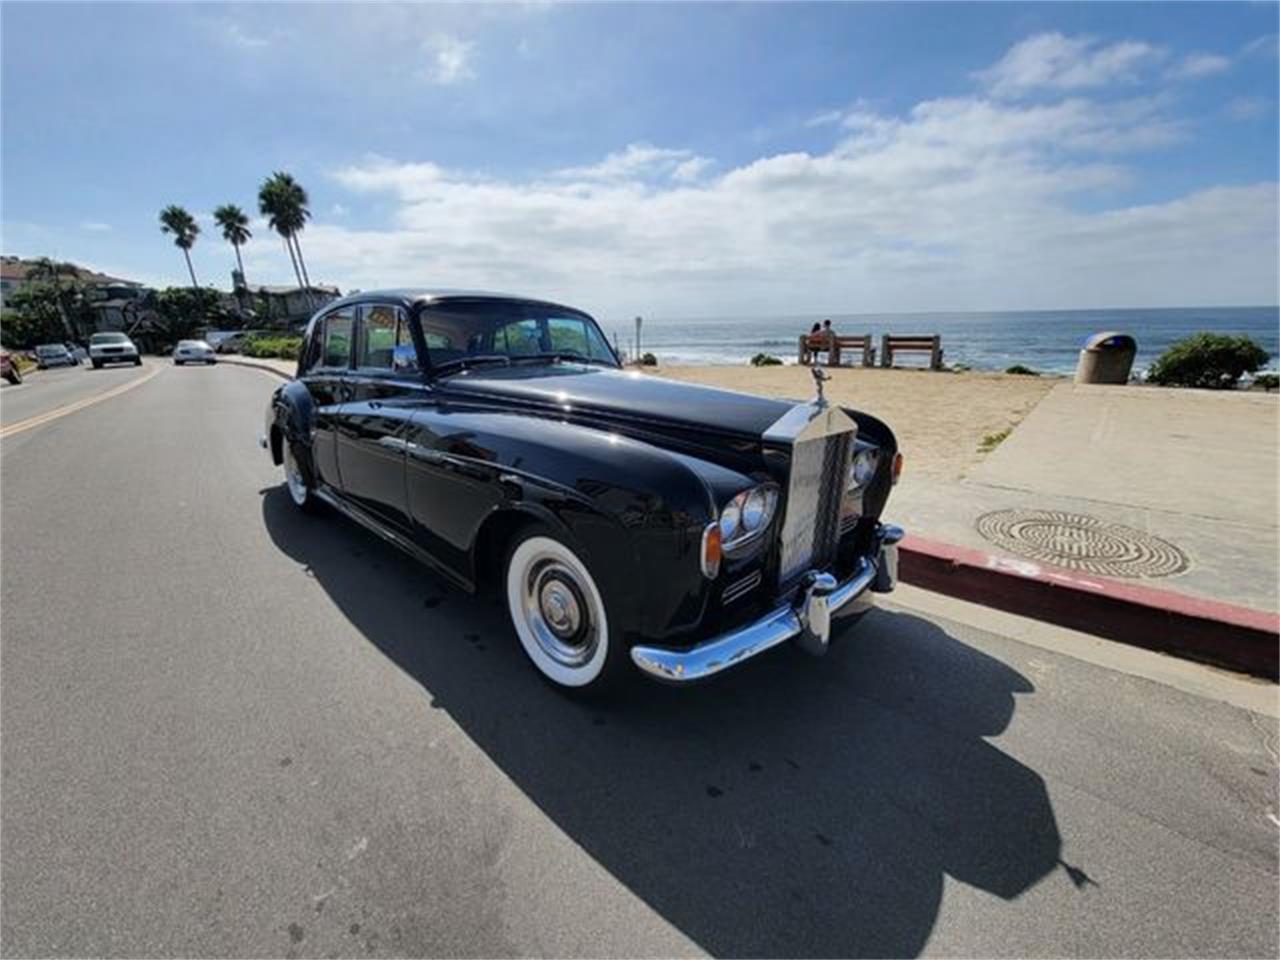 For Sale: 1964 Rolls-Royce Silver Cloud III in La Jolla, California for sale in La Jolla, CA